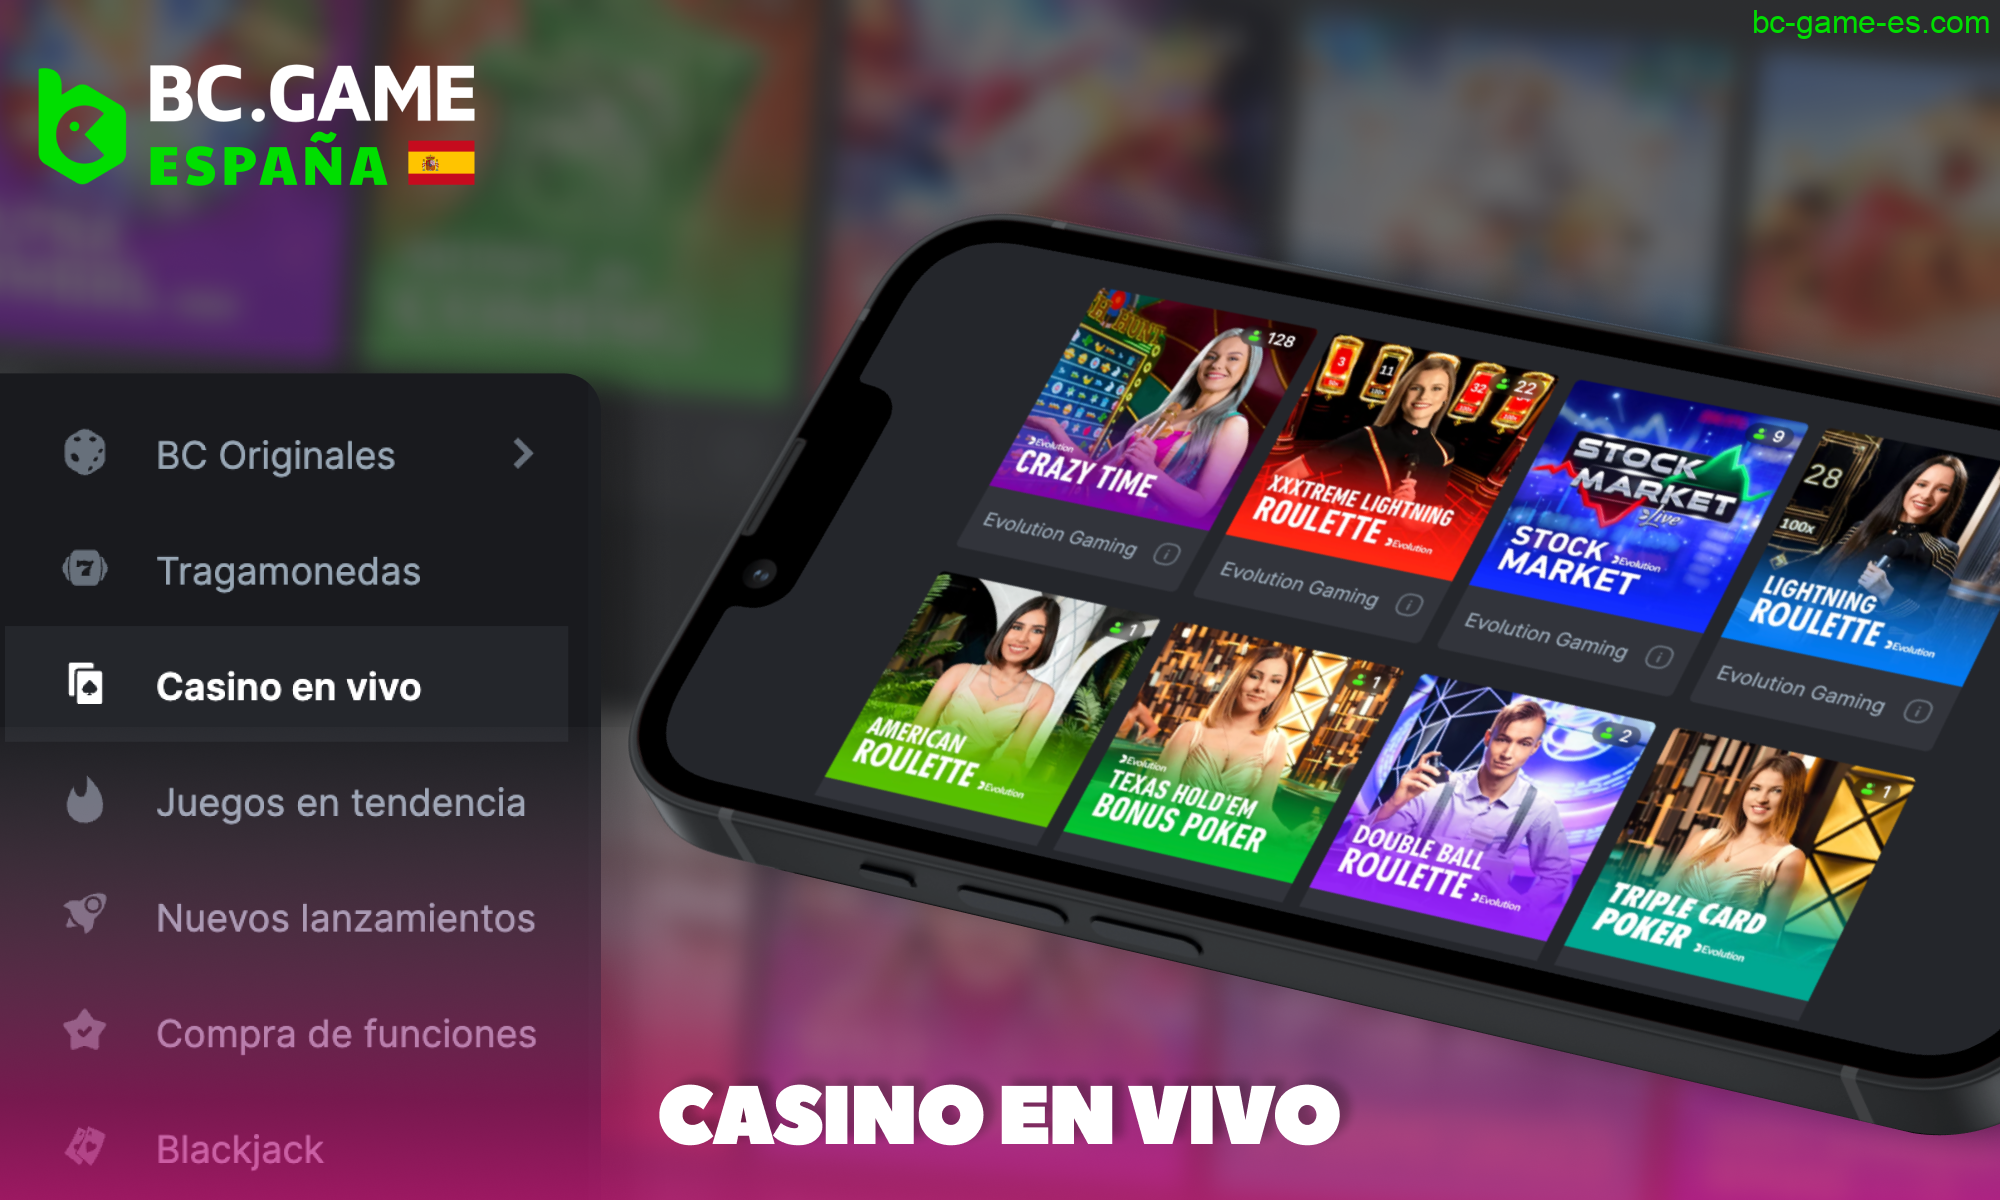 Casino en vivo para jugadores de BC Game de España